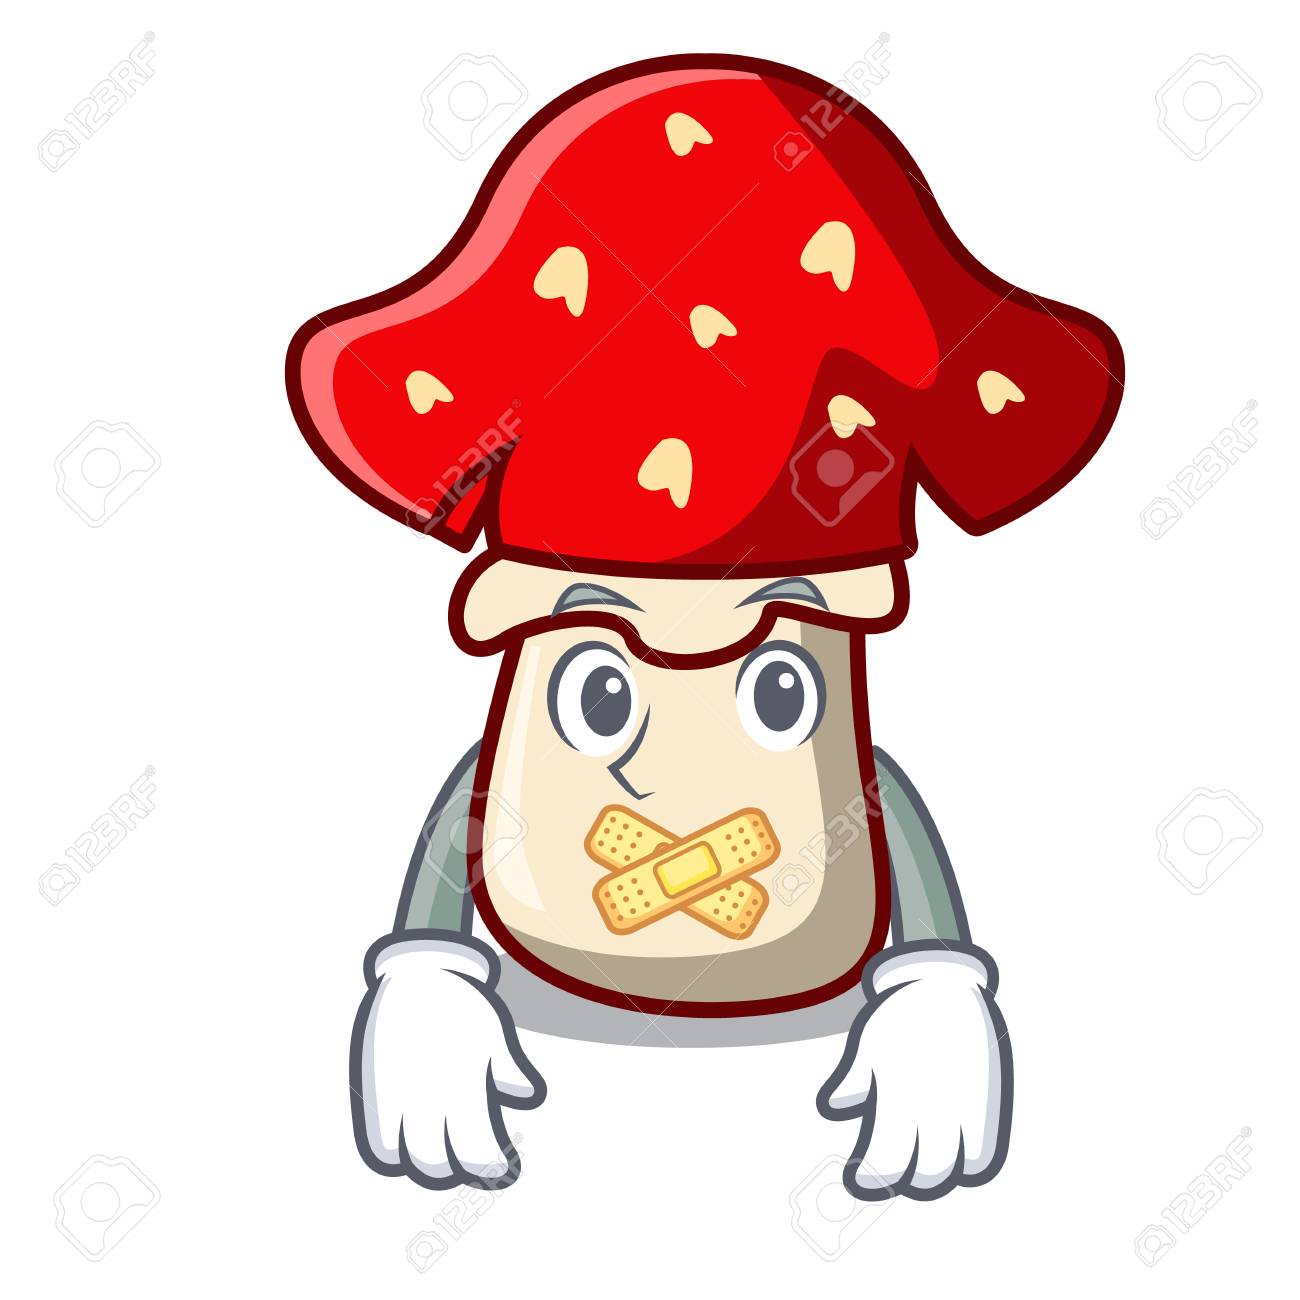 mushroom clipart spotty